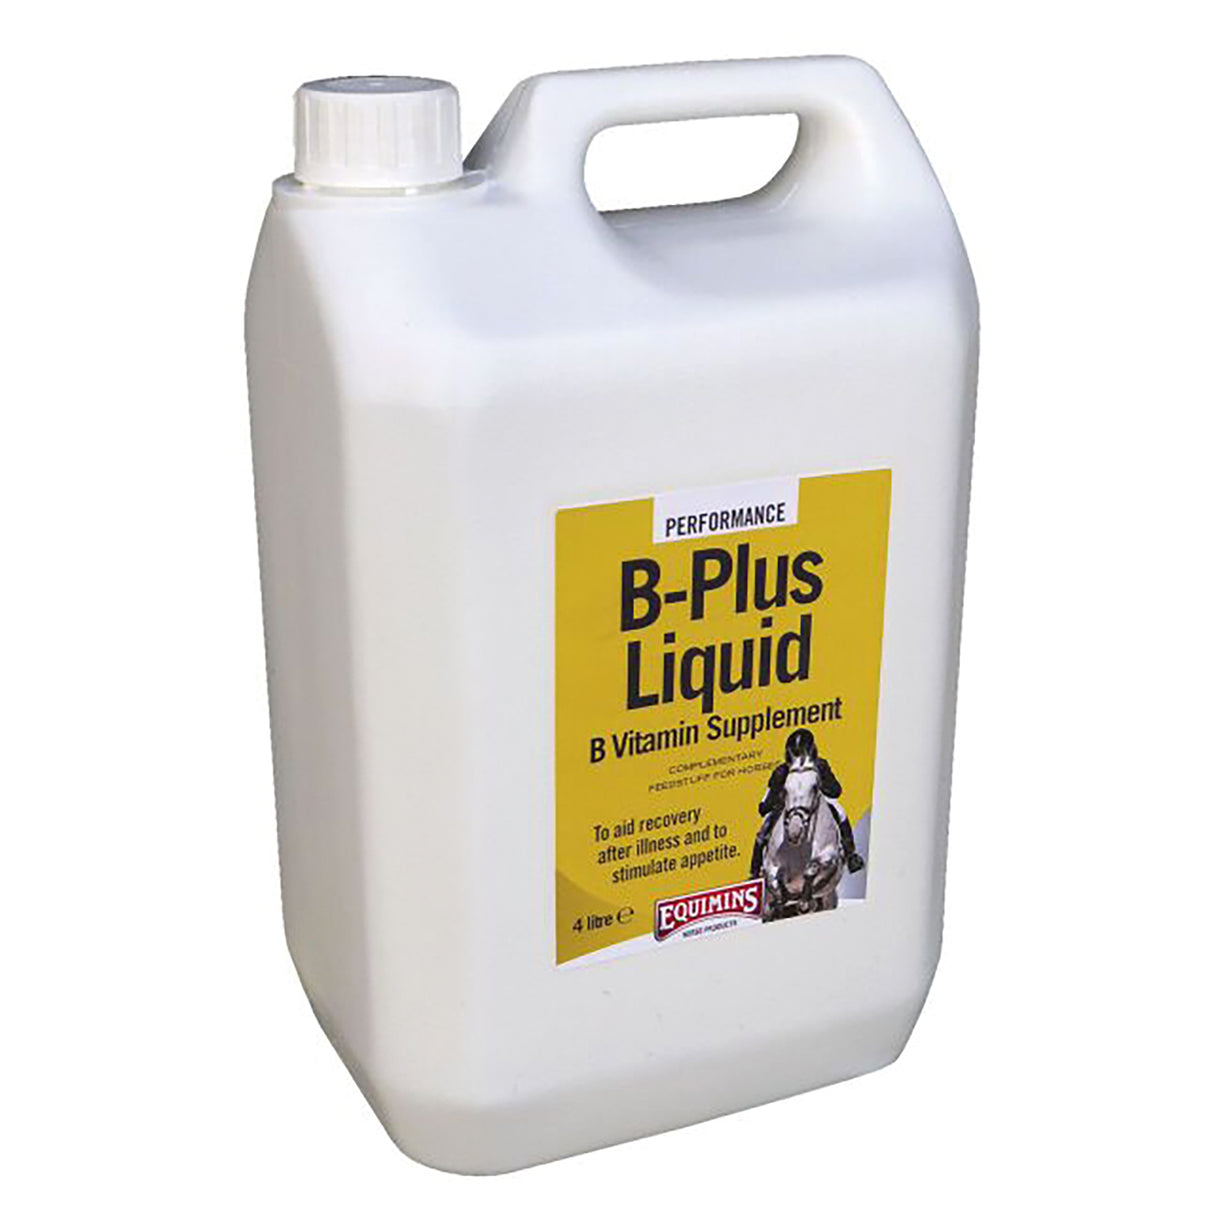 Equimins B-Plus flüssiges B-Vitamin-Ergänzungsmittel